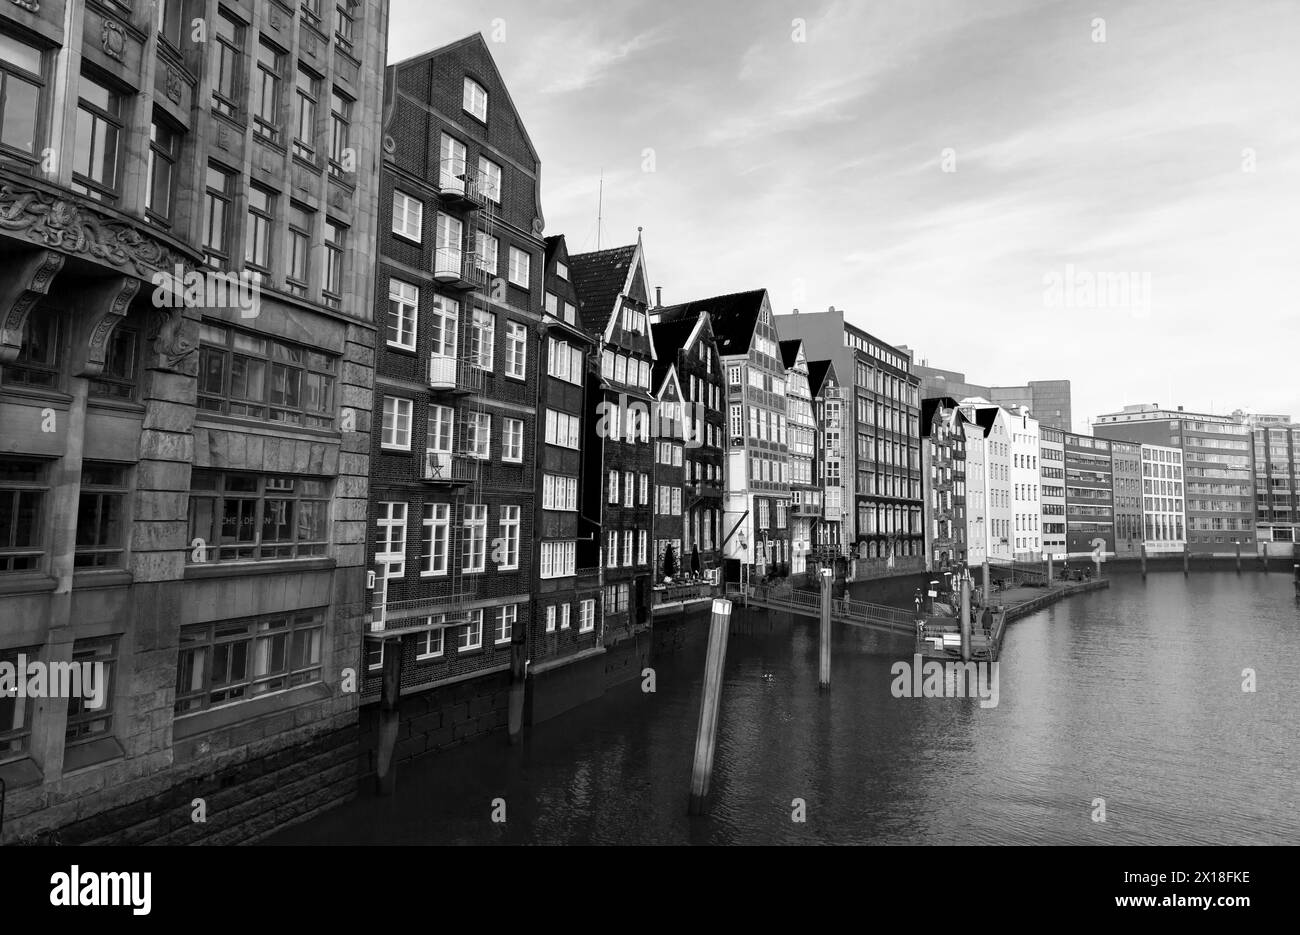 Hamburg, Deutschland - 30. November 2018: Blick auf die Altstadt von Hamburg mit Fassaden von Wohnhäusern der Altstadt, Schwarzweißfoto Stockfoto